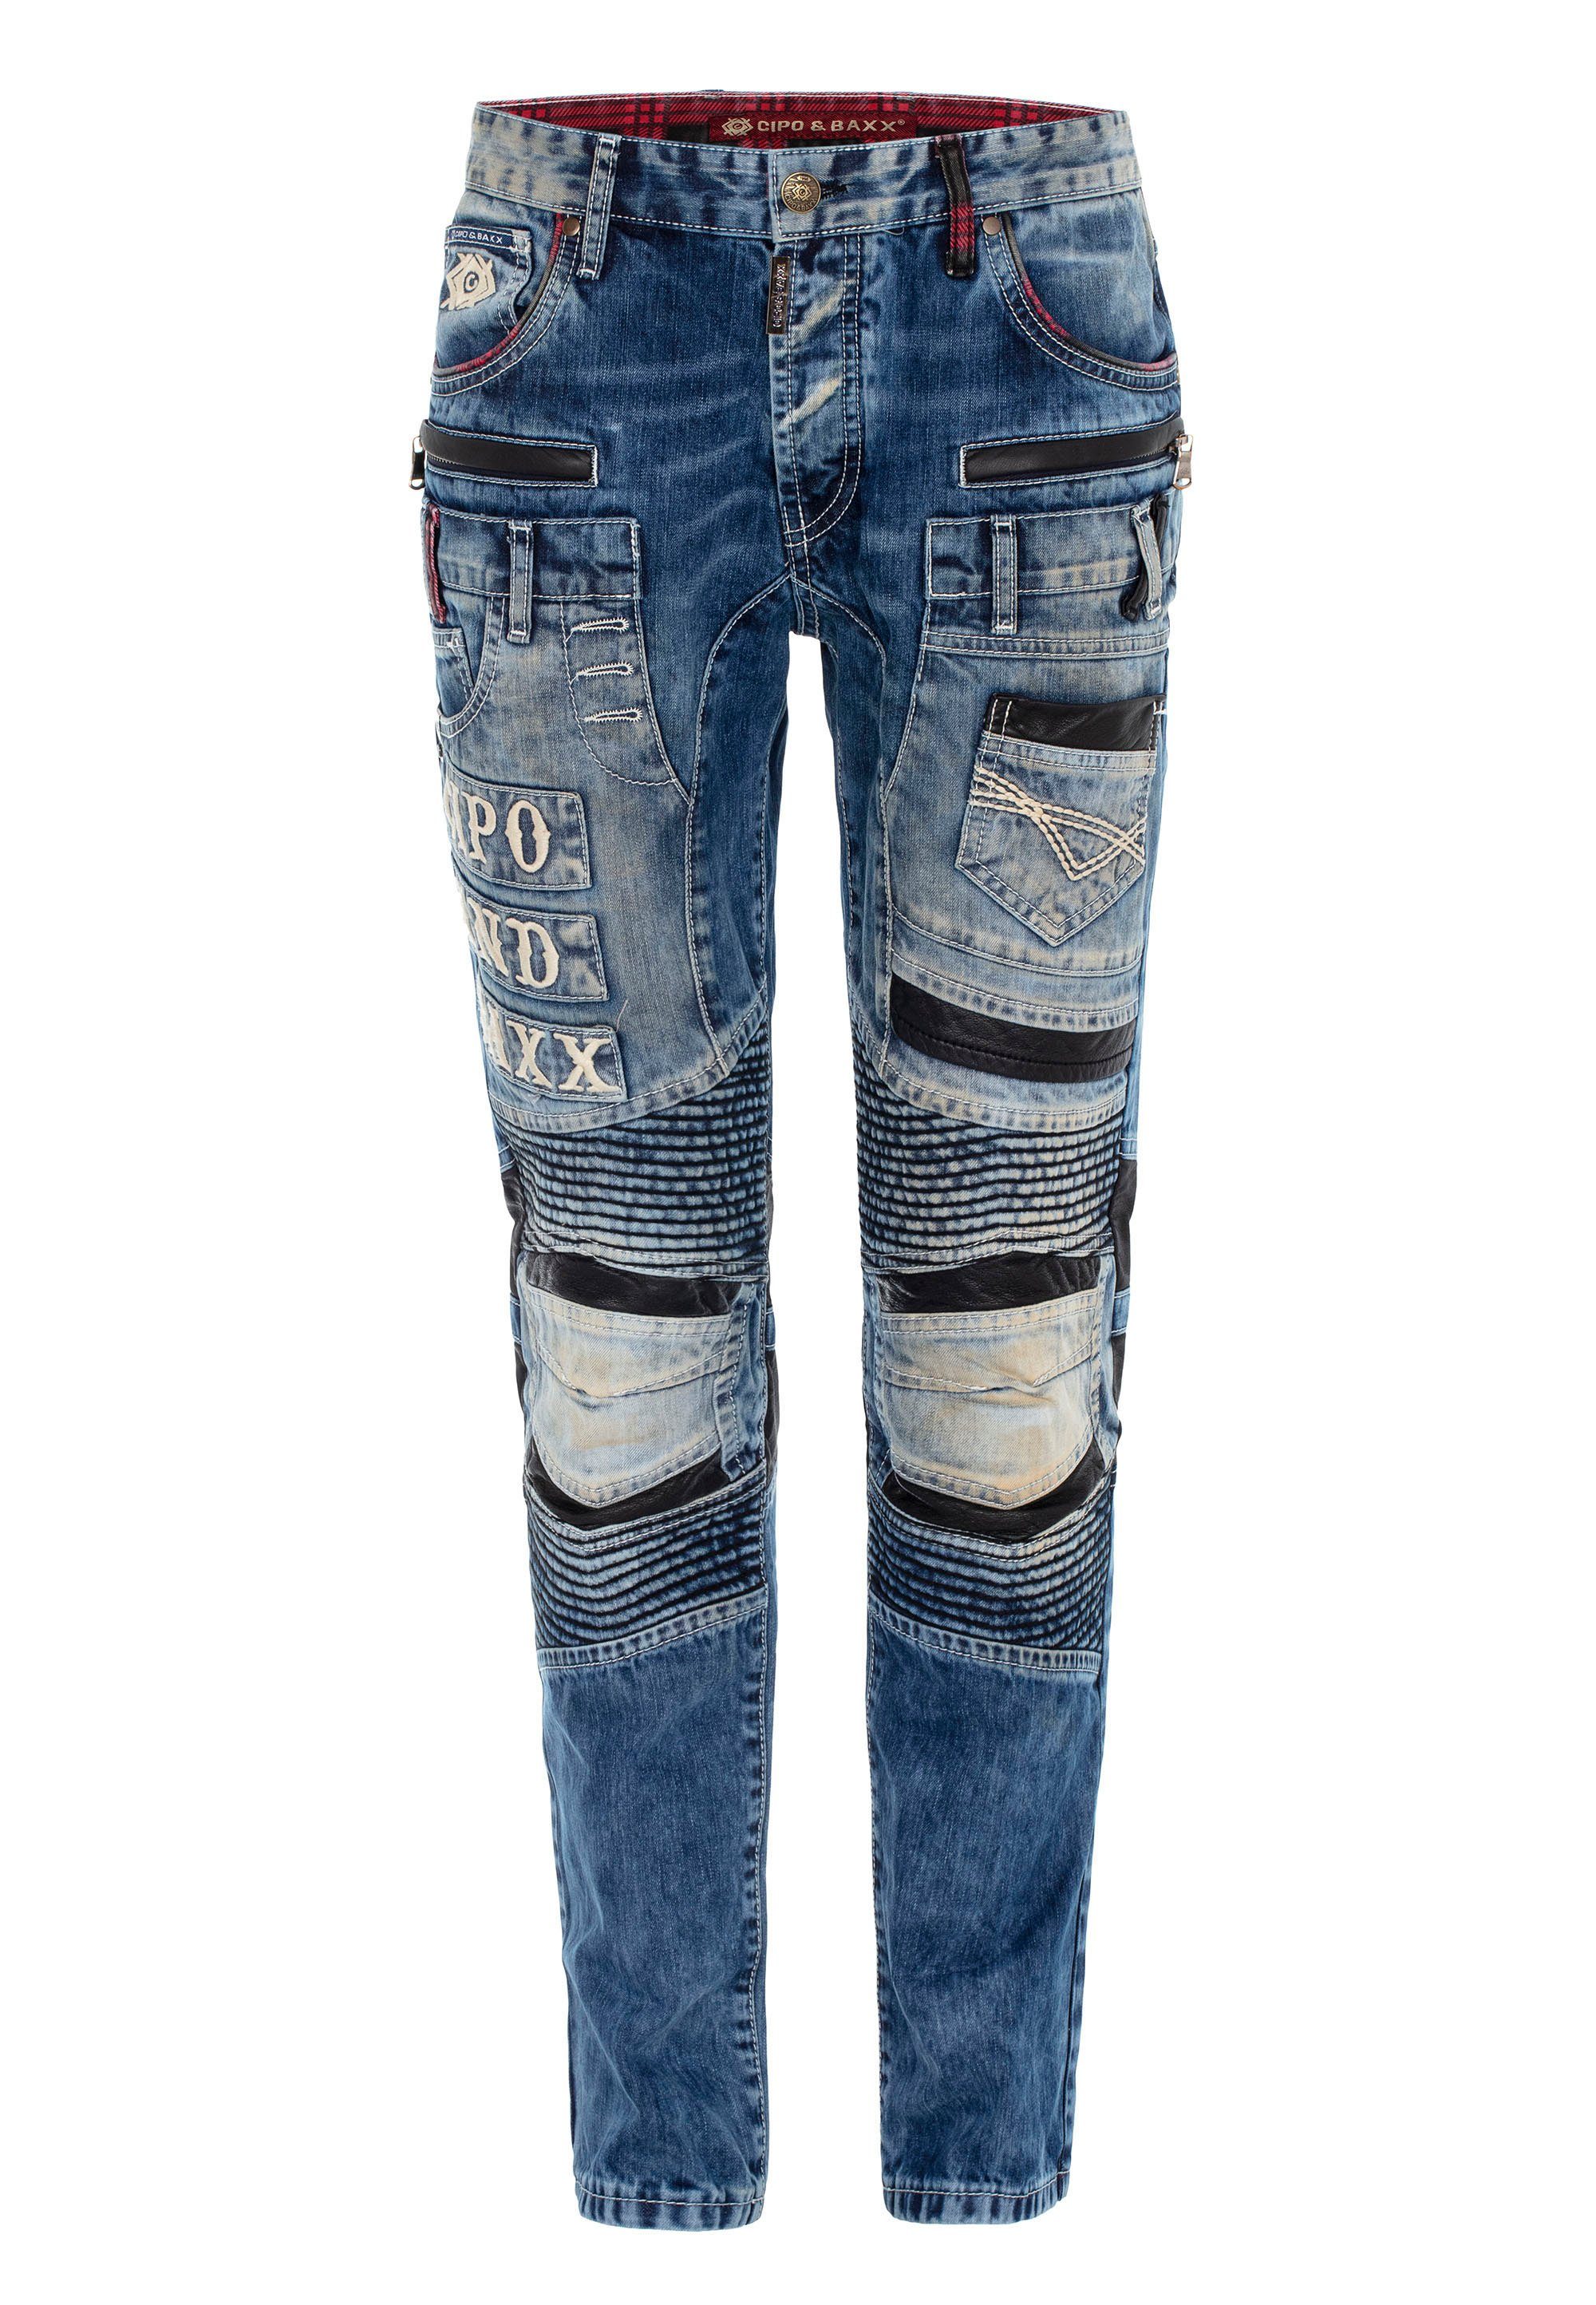 Herren Jeans Cipo & Baxx Bequeme Jeans CD637 im coolen Look